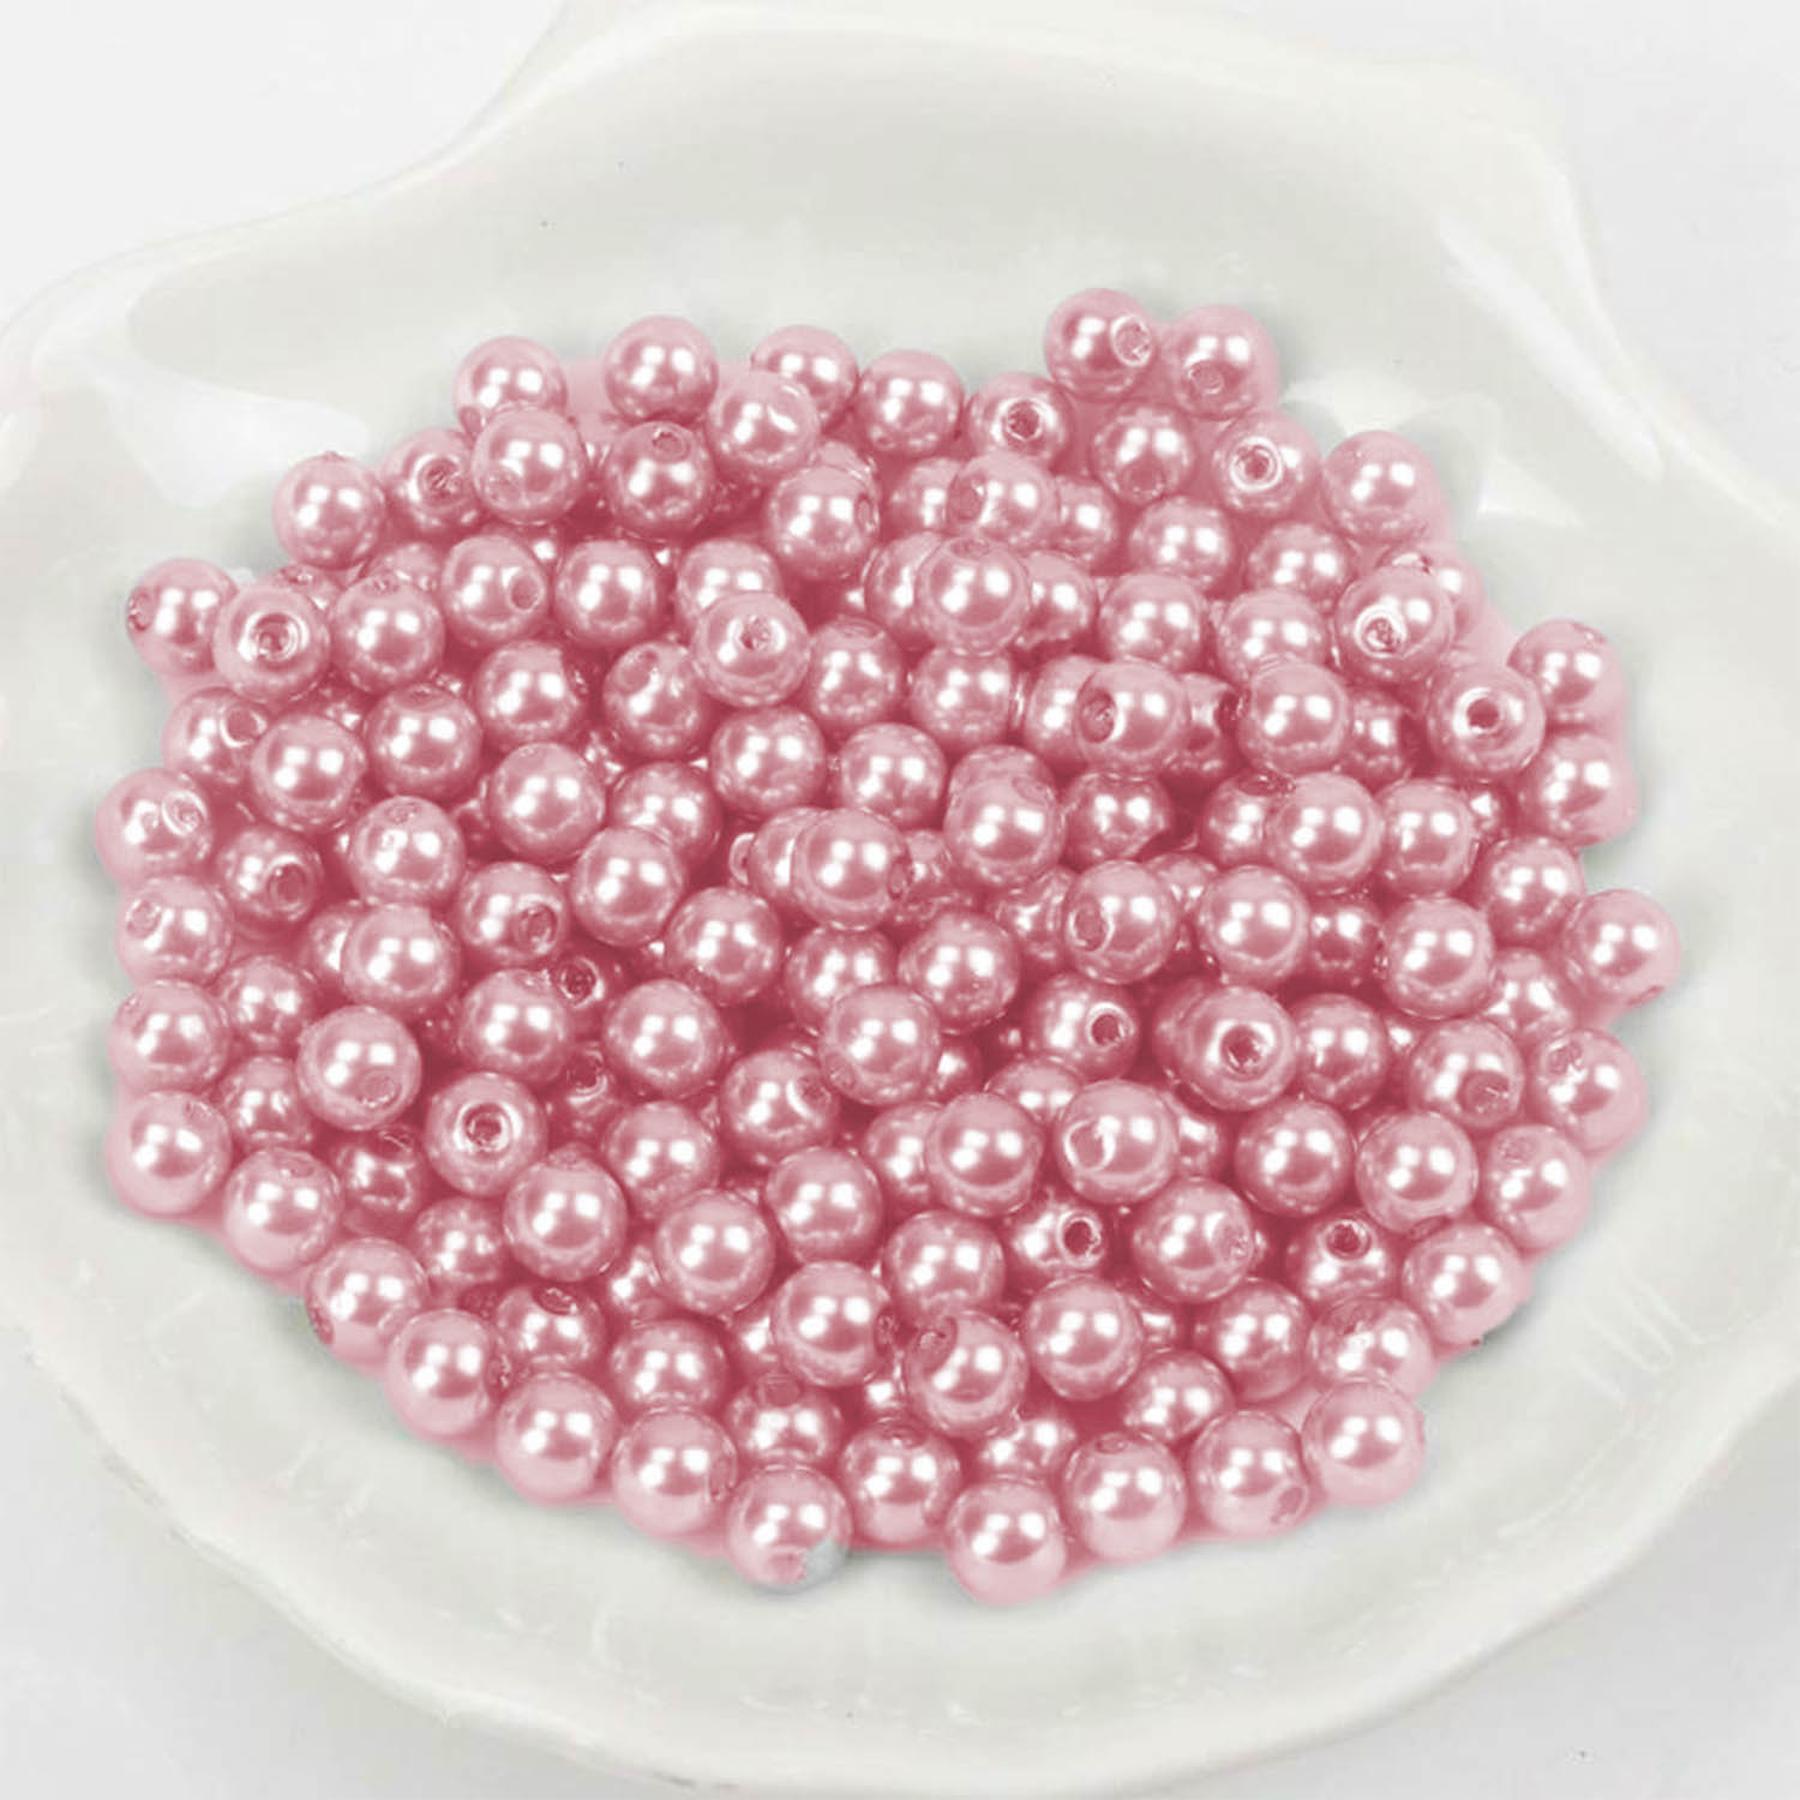 Wachsperlen - 600 Stück - 2mm - Rosa dunkel